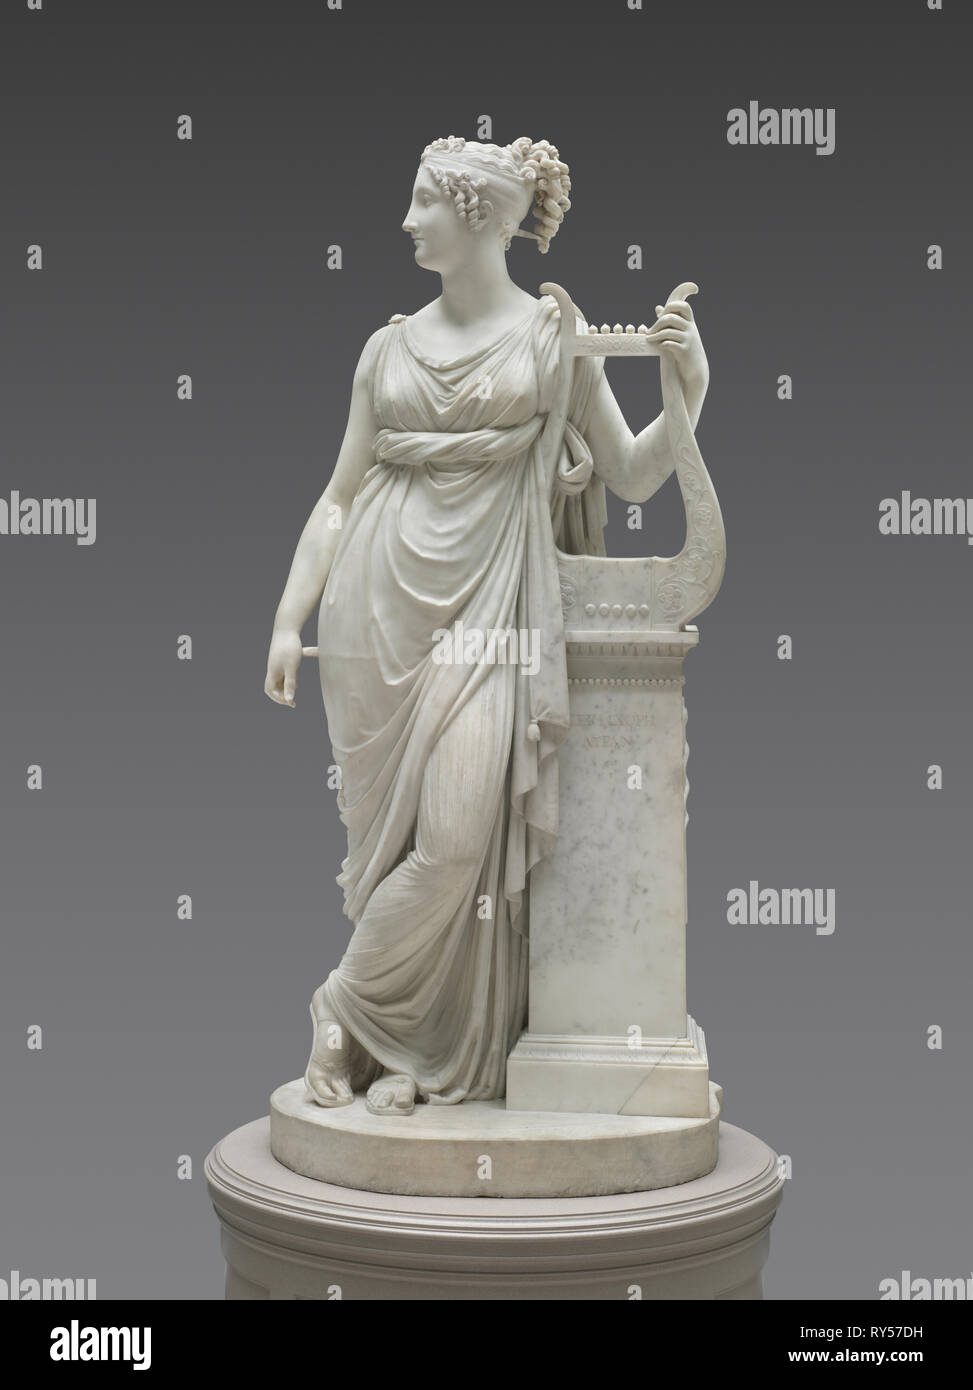 Terpsichore Lyran (Muse of Lyric Poetry), 1816. Antonio Canova (Italian, 1757-1822). Marble; overall: 177.5 x 78.1 x 61 cm (69 7/8 x 30 3/4 x 24 in Stock Photo